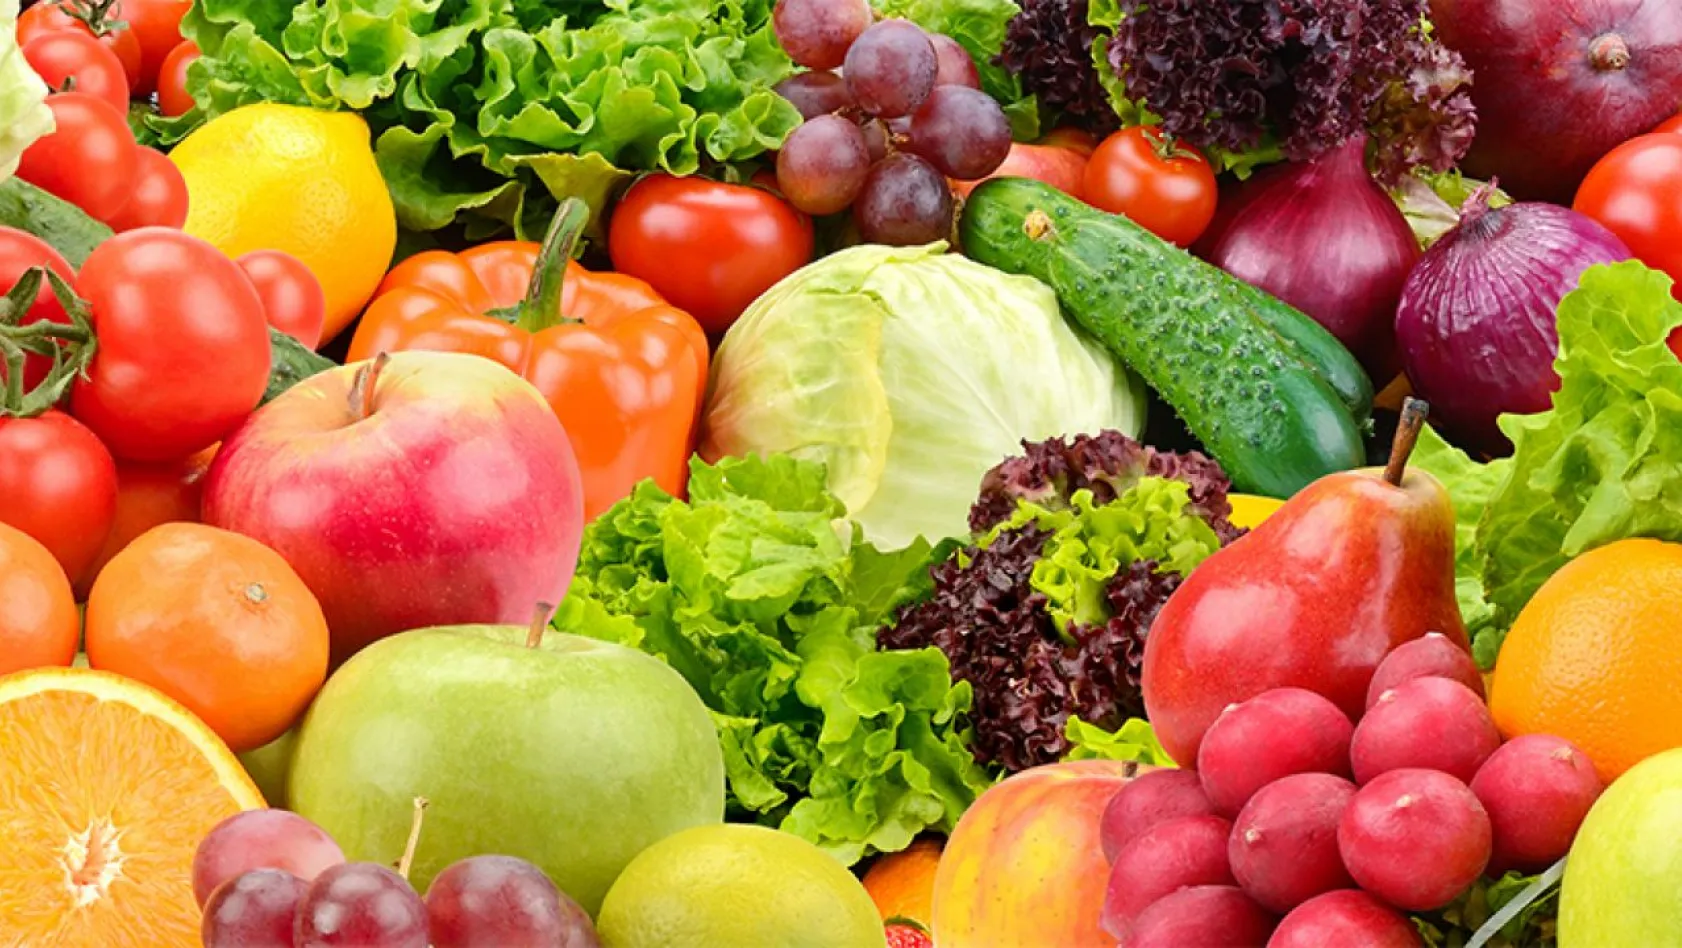 Kış ayında hangi besinleri tüketmeliyiz? 6 Besine Dikkat!